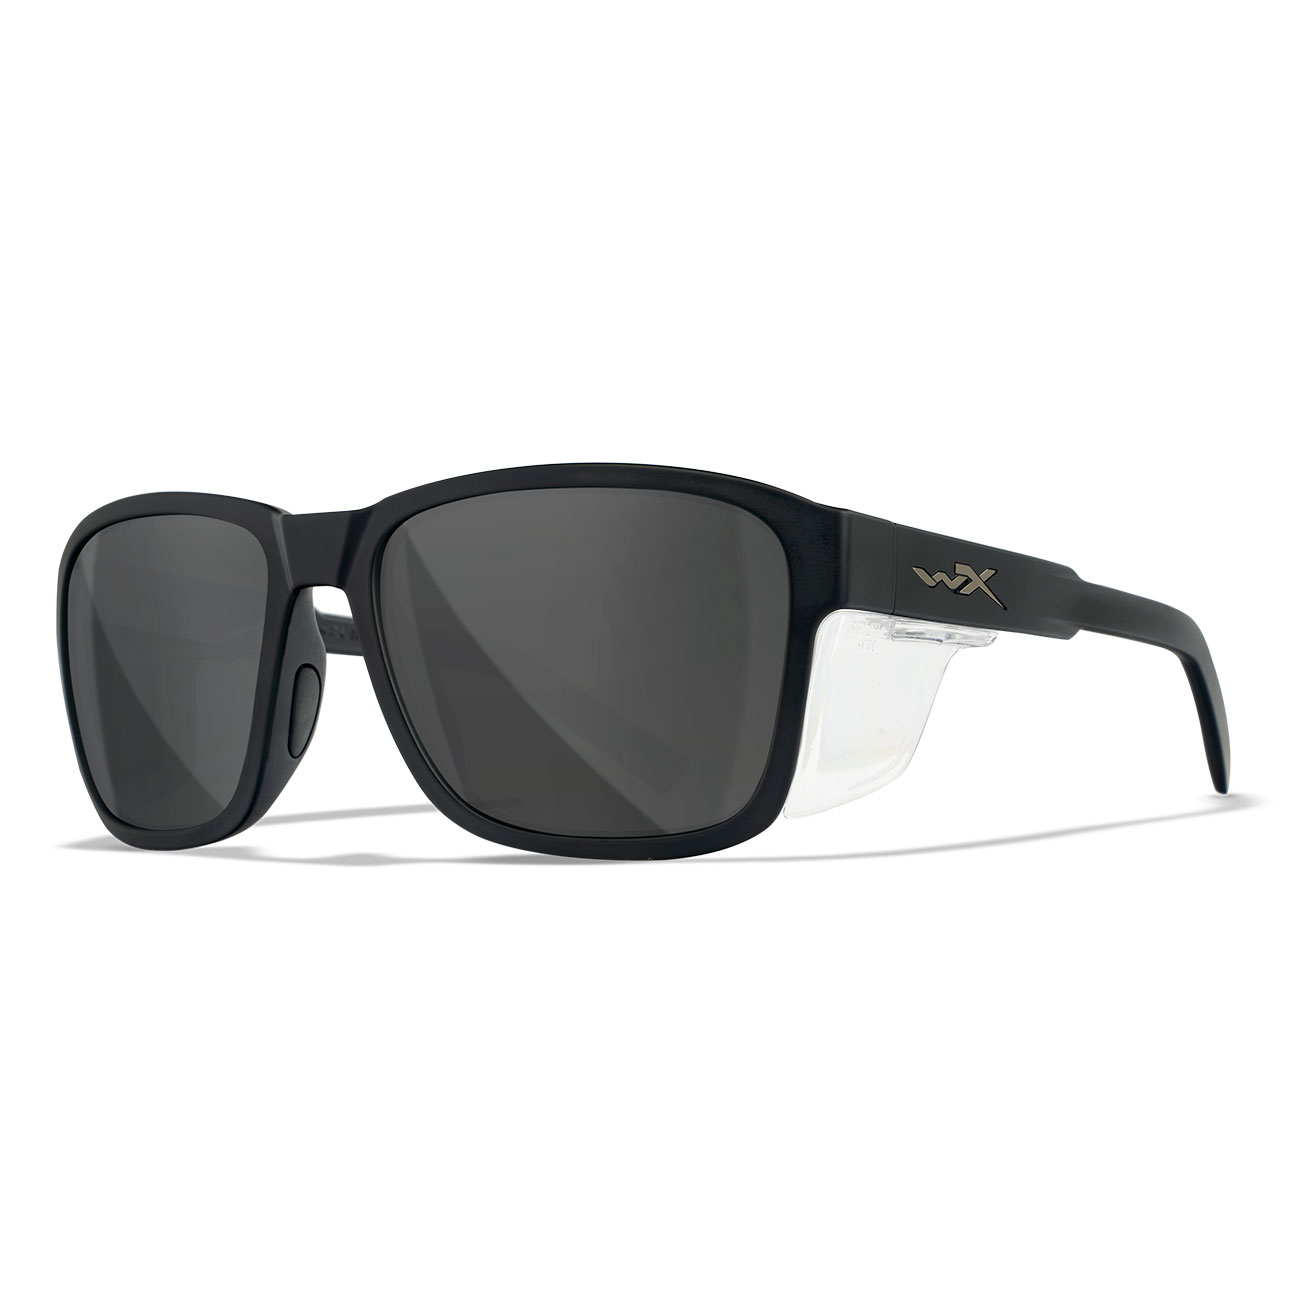 Wiley X Sonnenbrille Trek matt schwarz Glser grau inkl. Brillenetui und Seitenschutz Bild 4